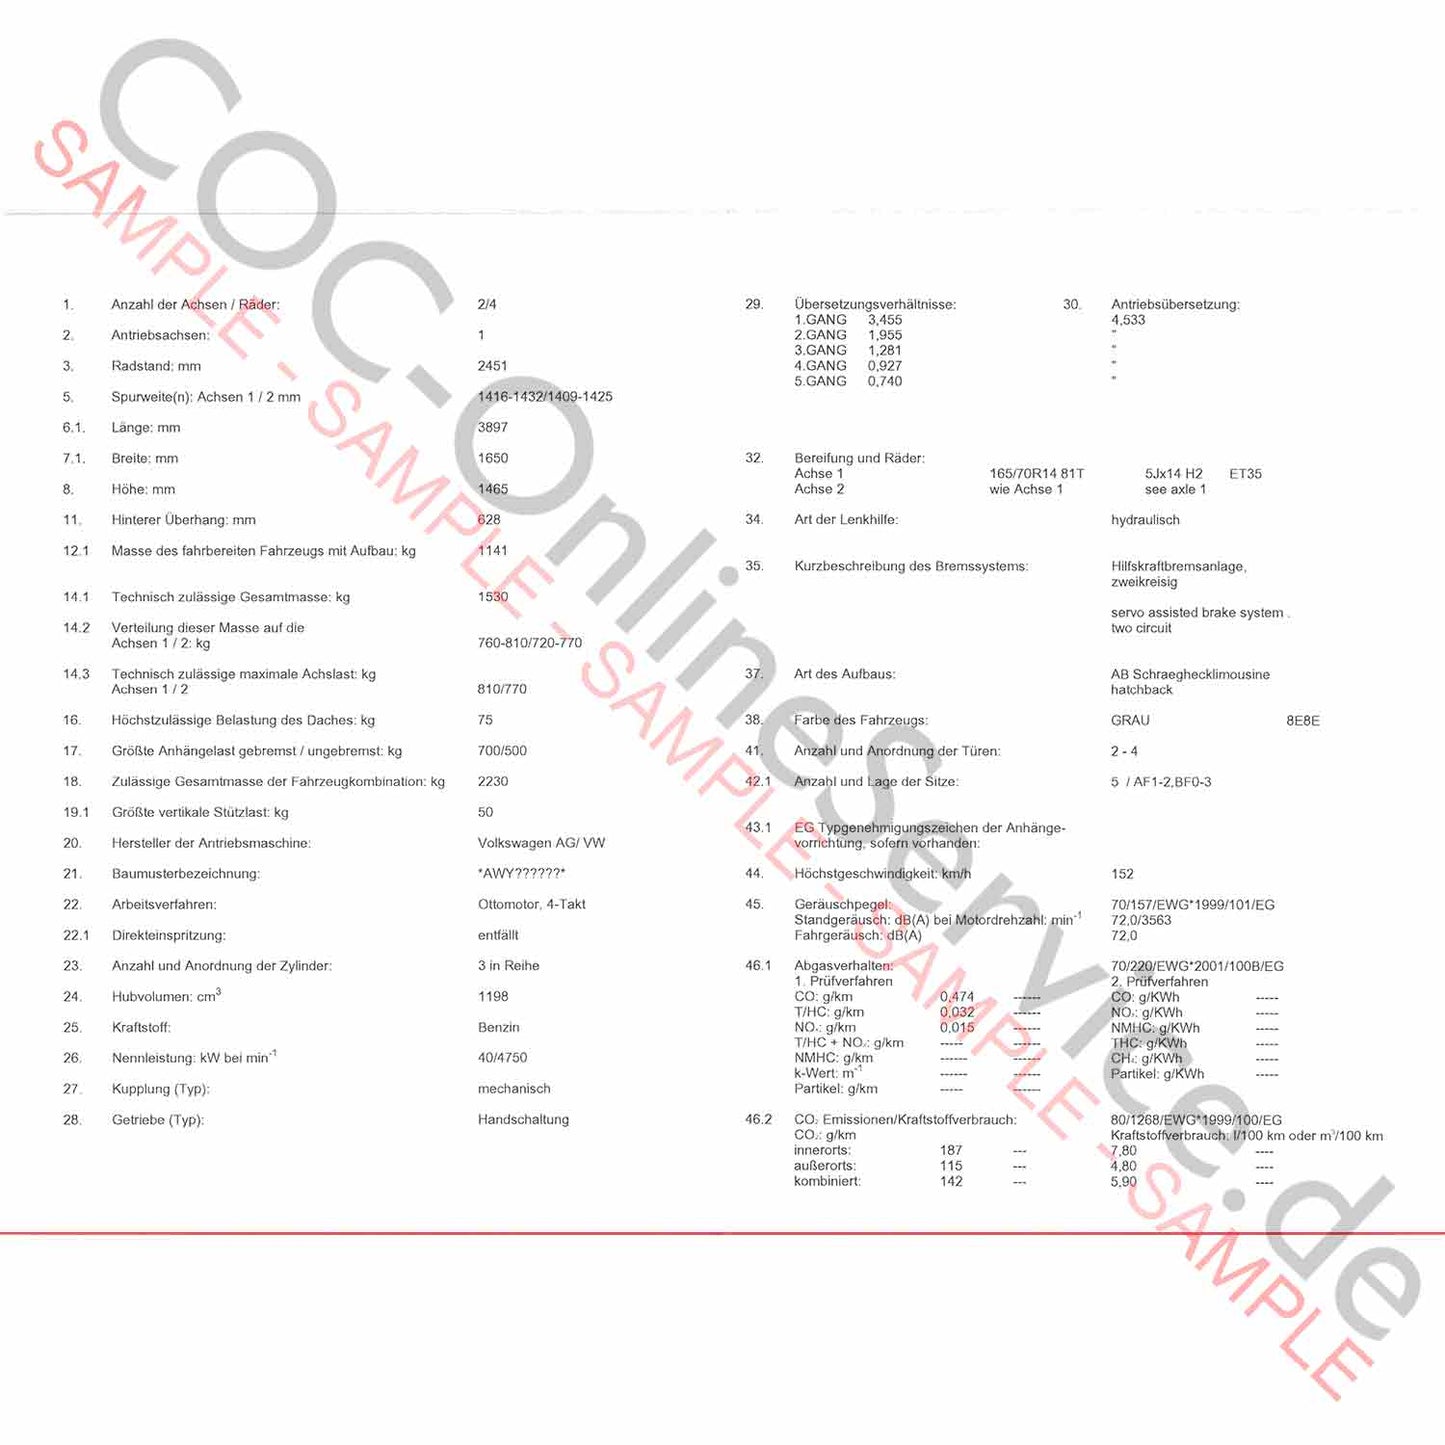 COC-papieren voor VW Volkswagen (certificaat van overeenstemming)